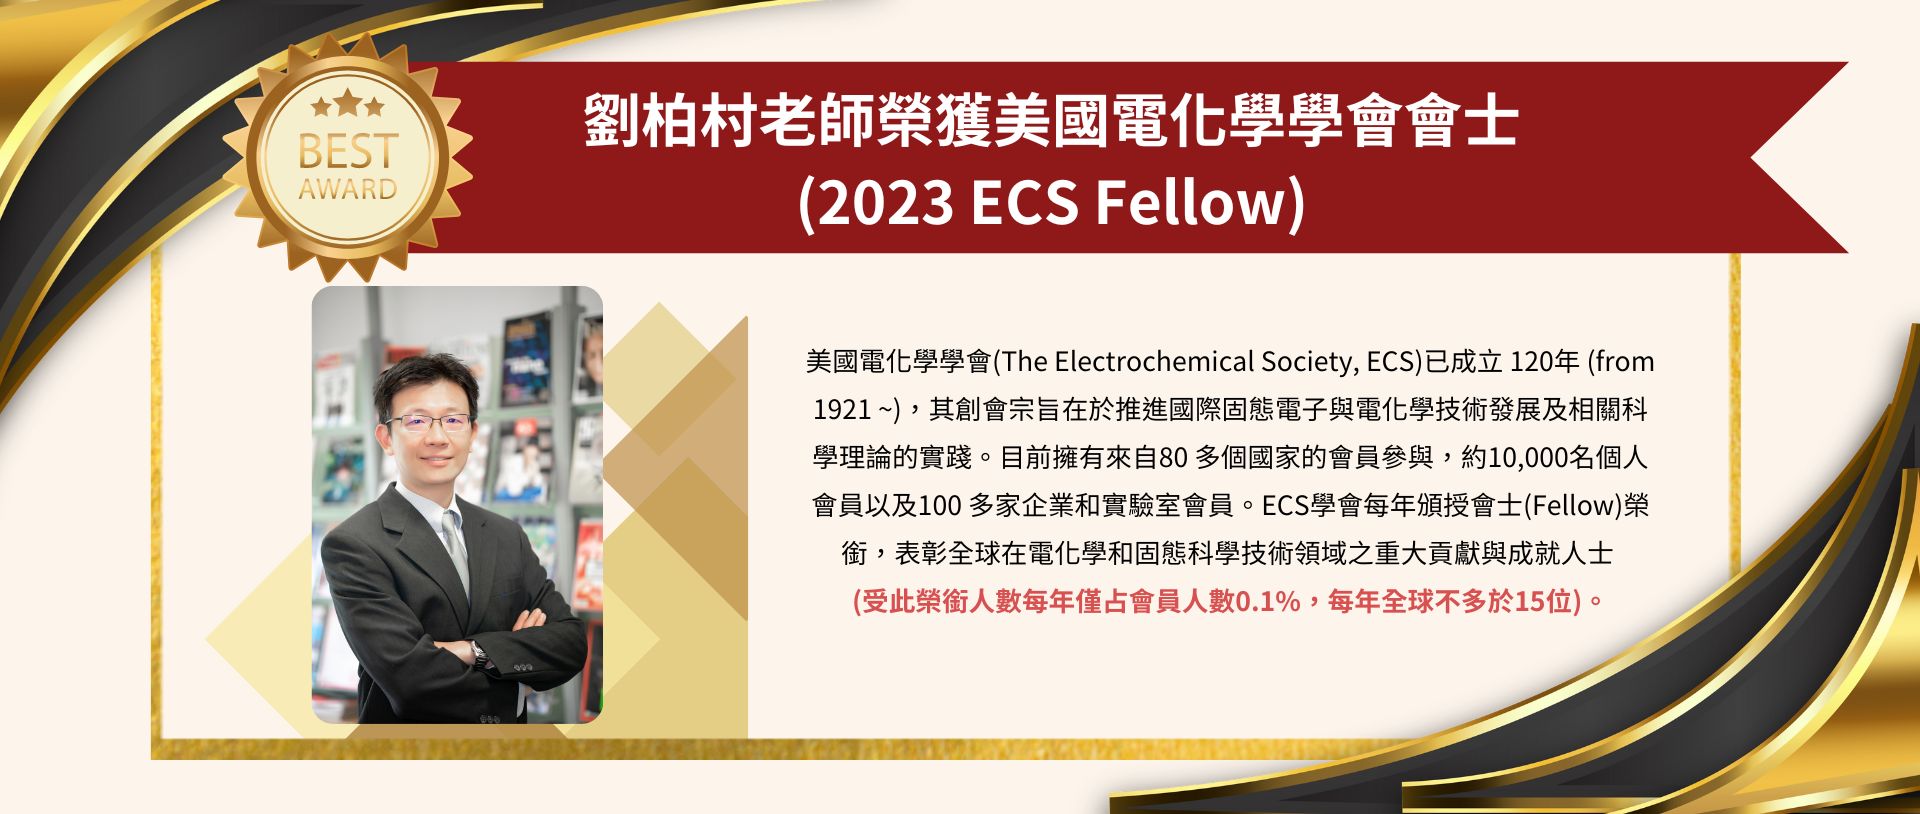 賀!!本系劉柏村老師獲美國電化學學會會士(2023 ECS Fellow)